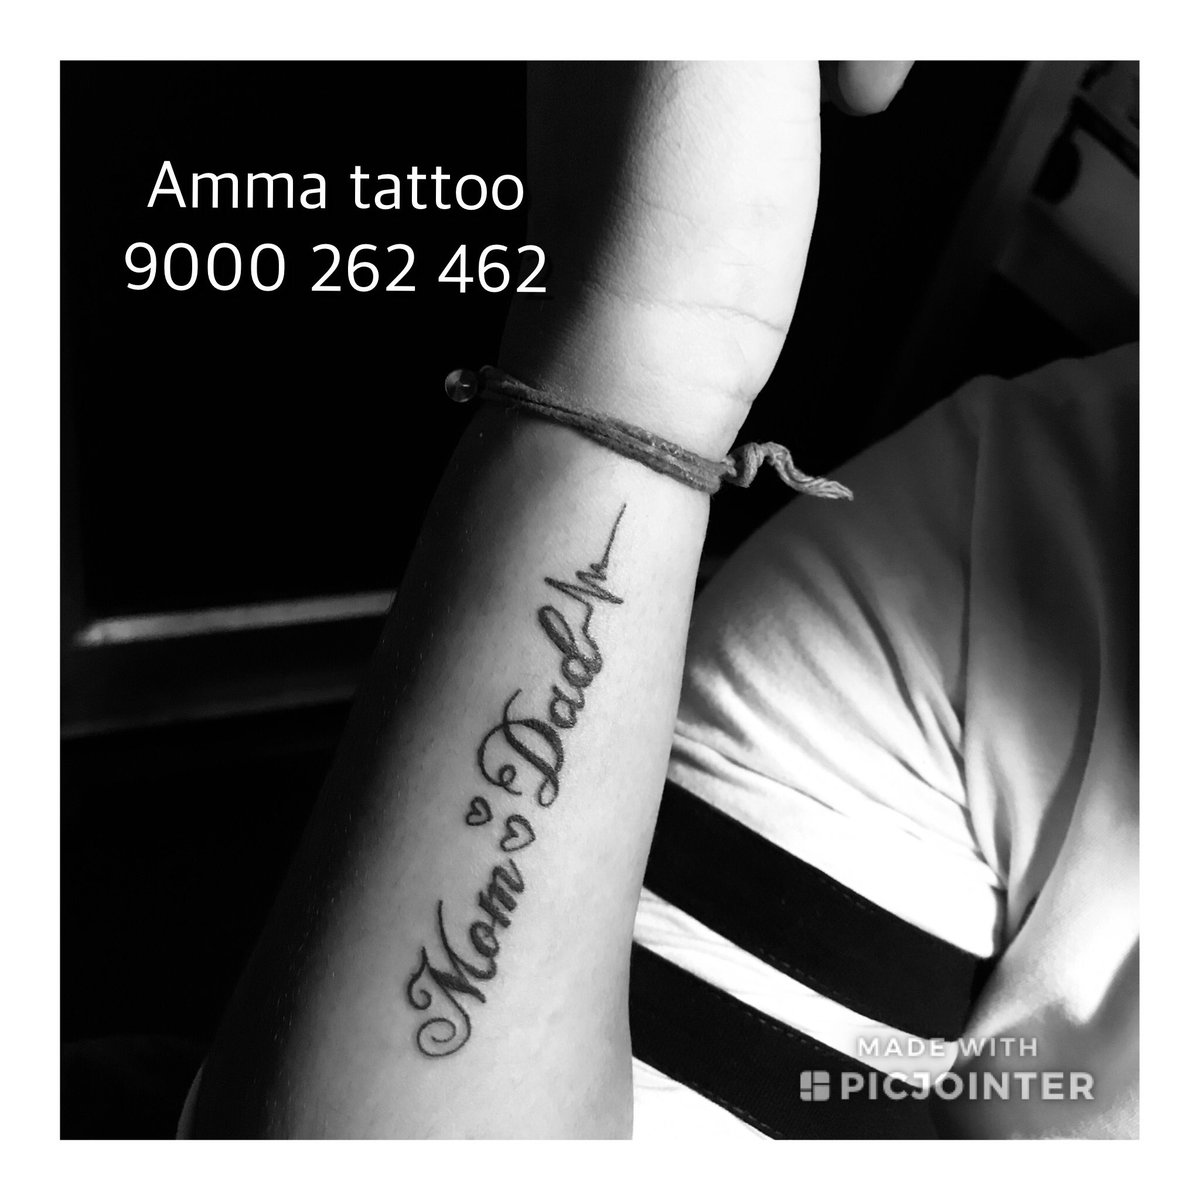 amma tattoo (@TattooAmma) / Twitter